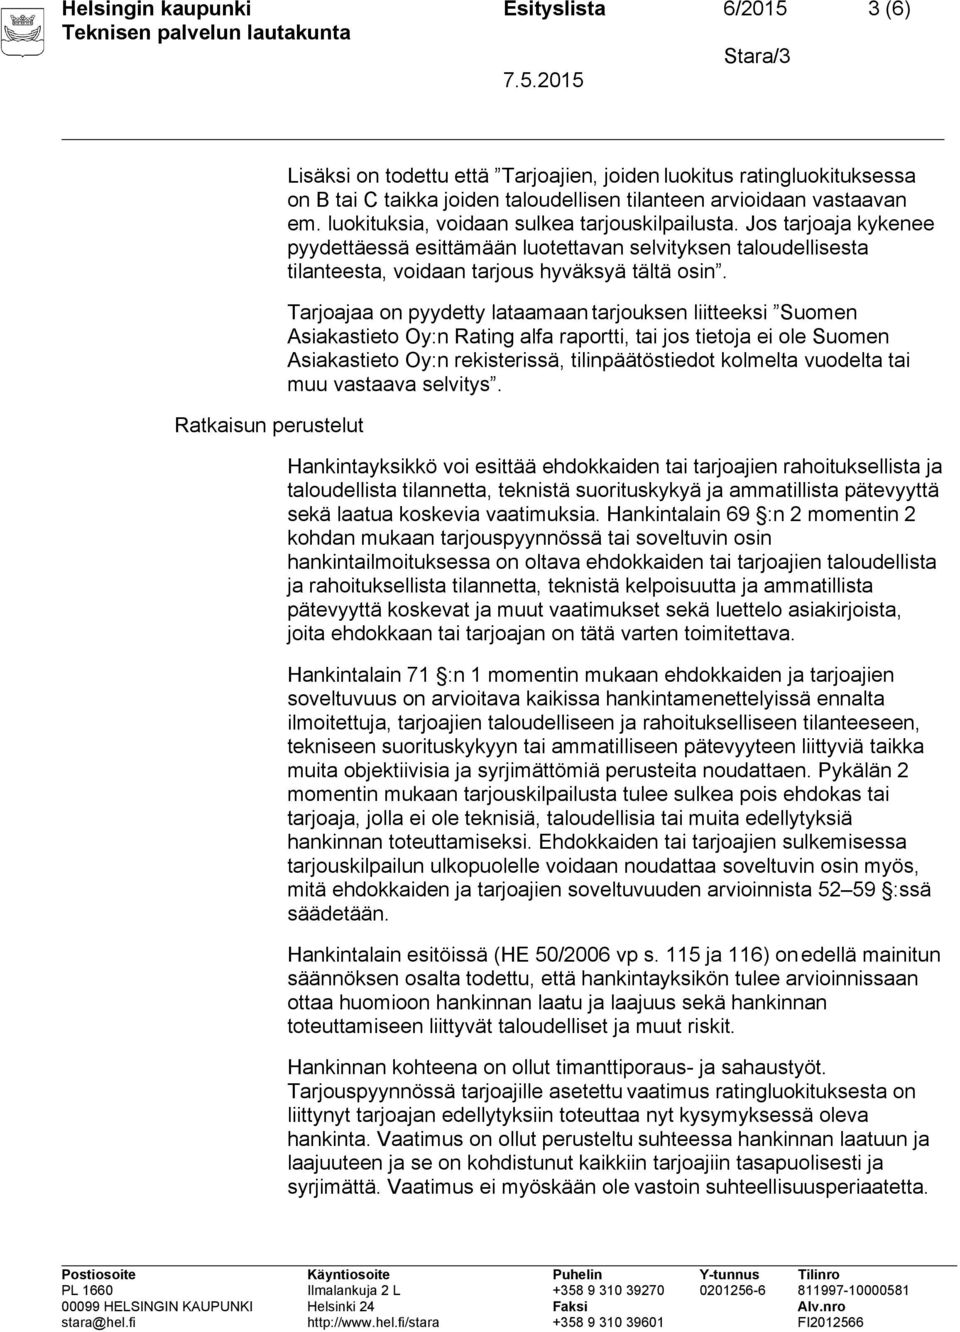 Tarjoajaa on pyydetty lataamaan tarjouksen liitteeksi Suomen Asiakastieto Oy:n Rating alfa raportti, tai jos tietoja ei ole Suomen Asiakastieto Oy:n rekisterissä, tilinpäätöstiedot kolmelta vuodelta